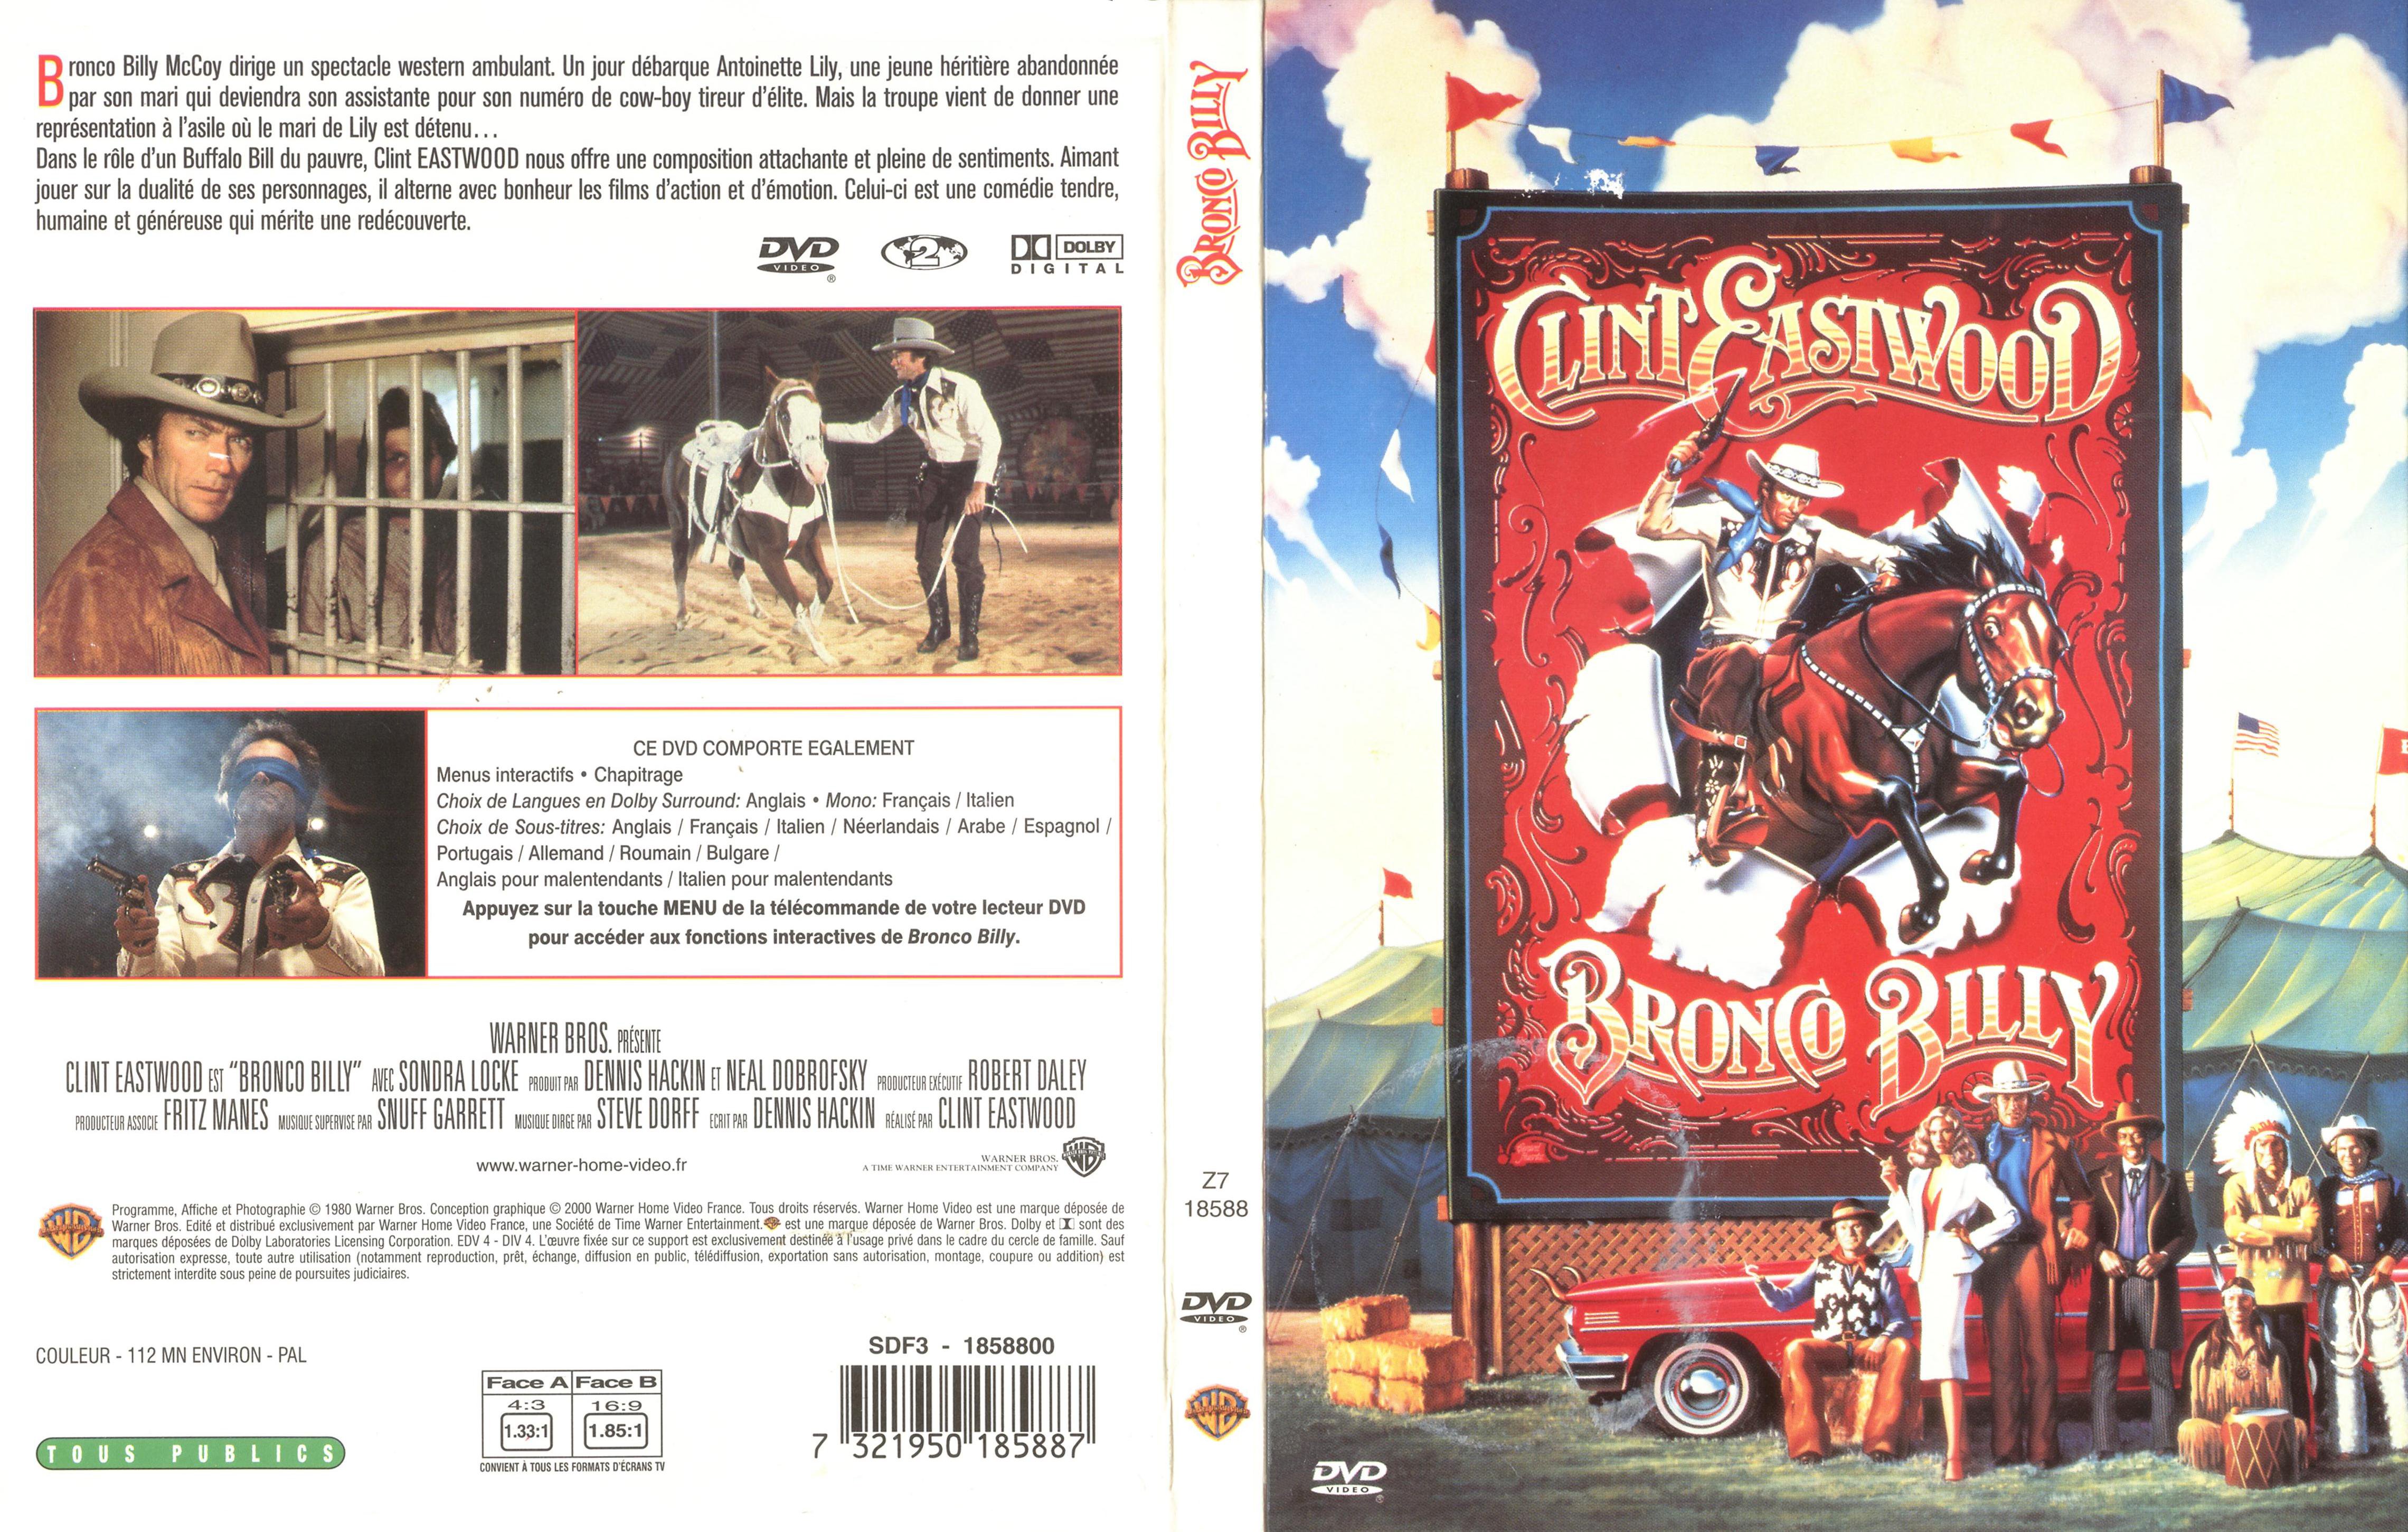 Jaquette DVD Bronco Billy v2